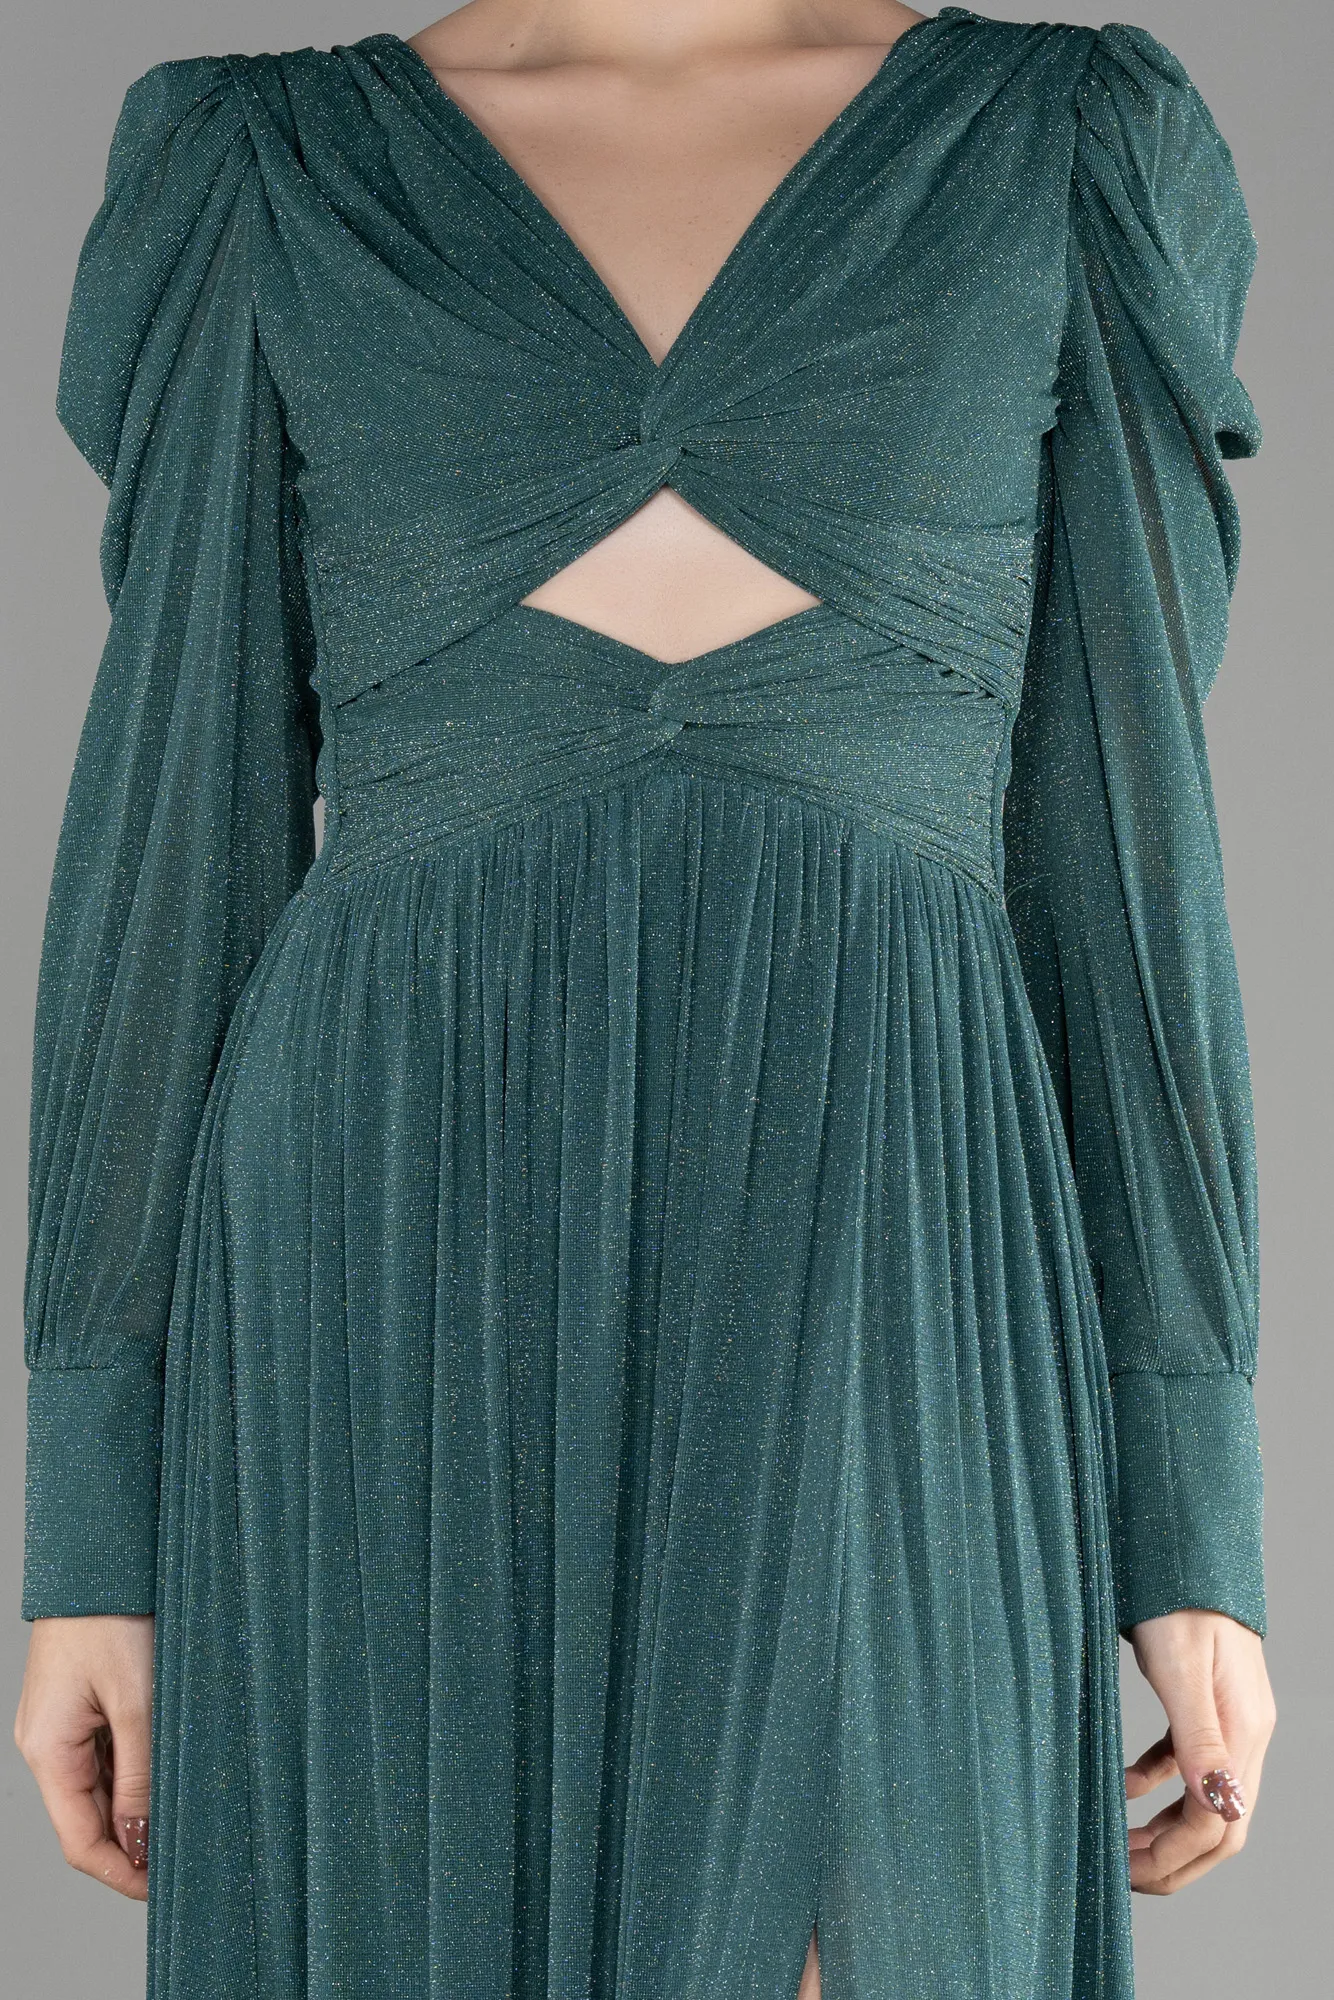 Emerald Green-Long Evening Dress ABU3103